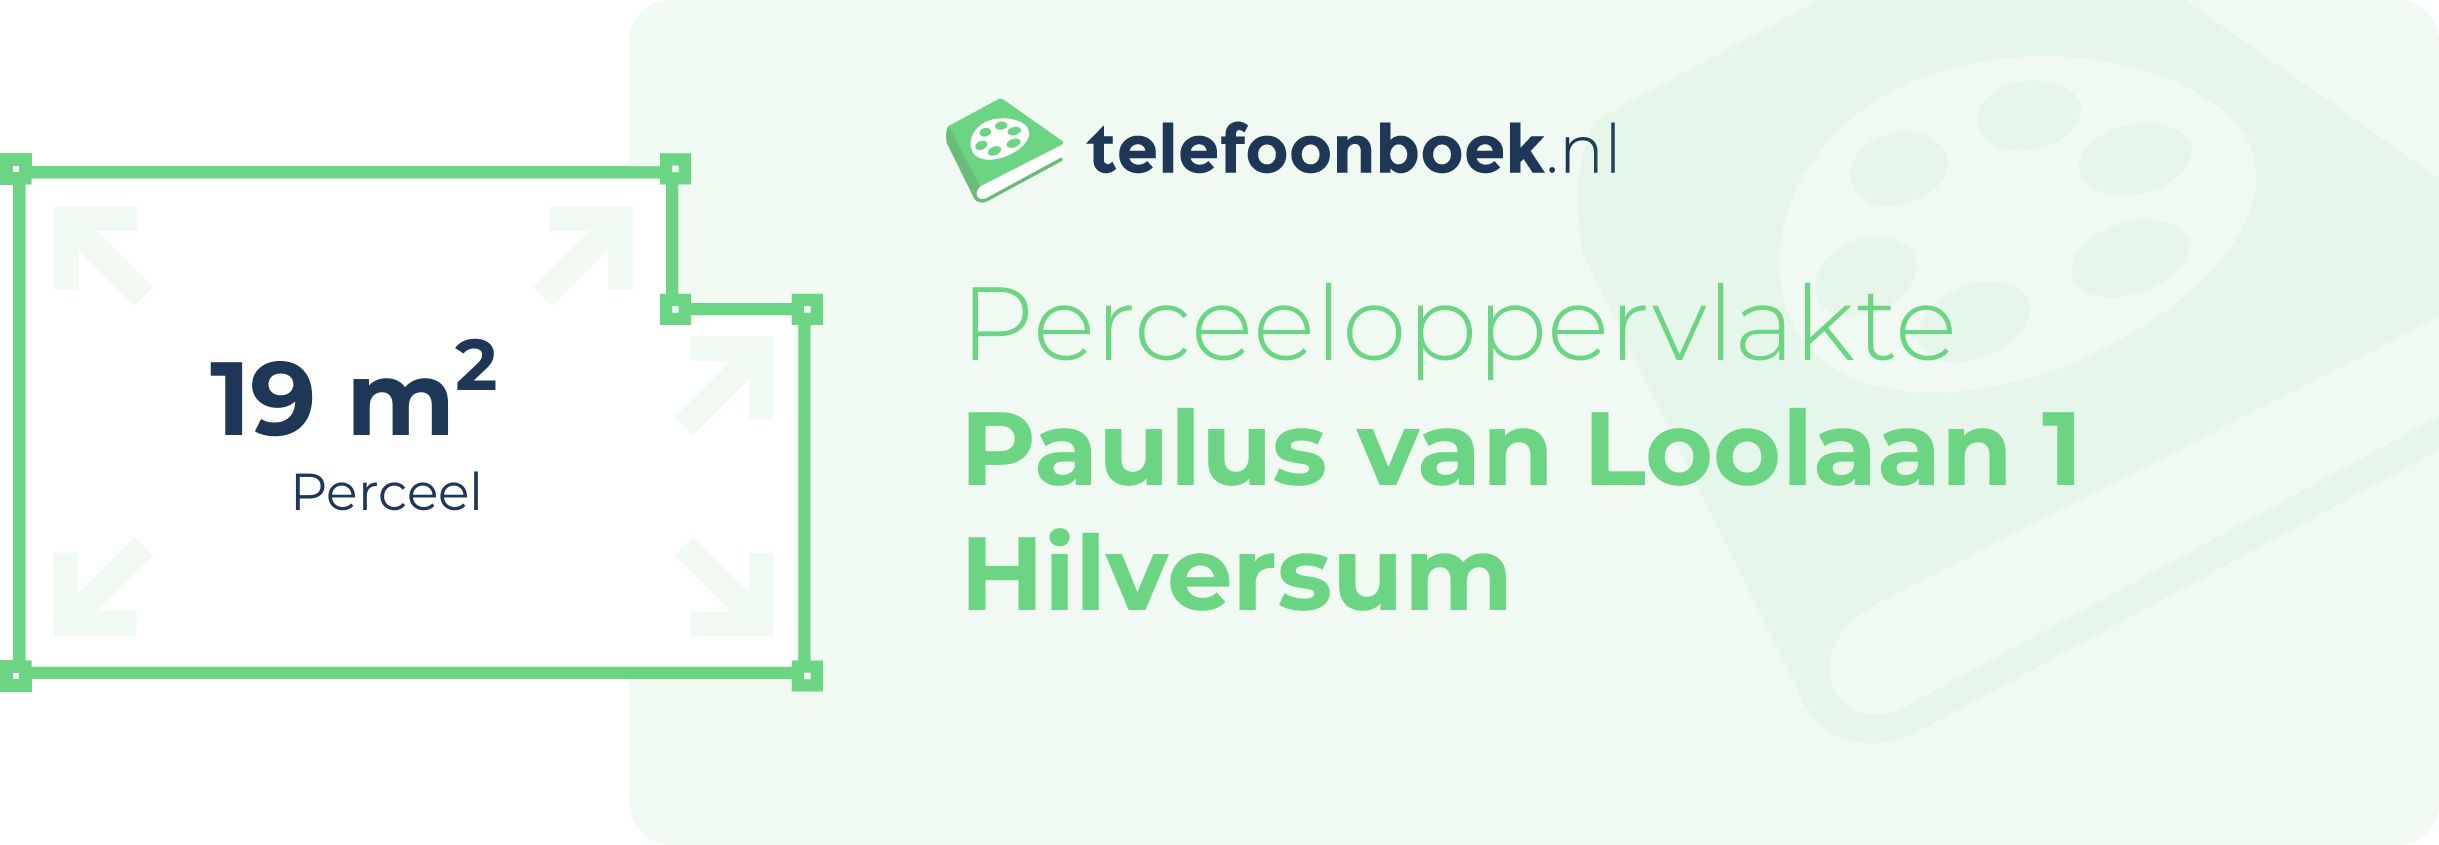 Perceeloppervlakte Paulus Van Loolaan 1 Hilversum